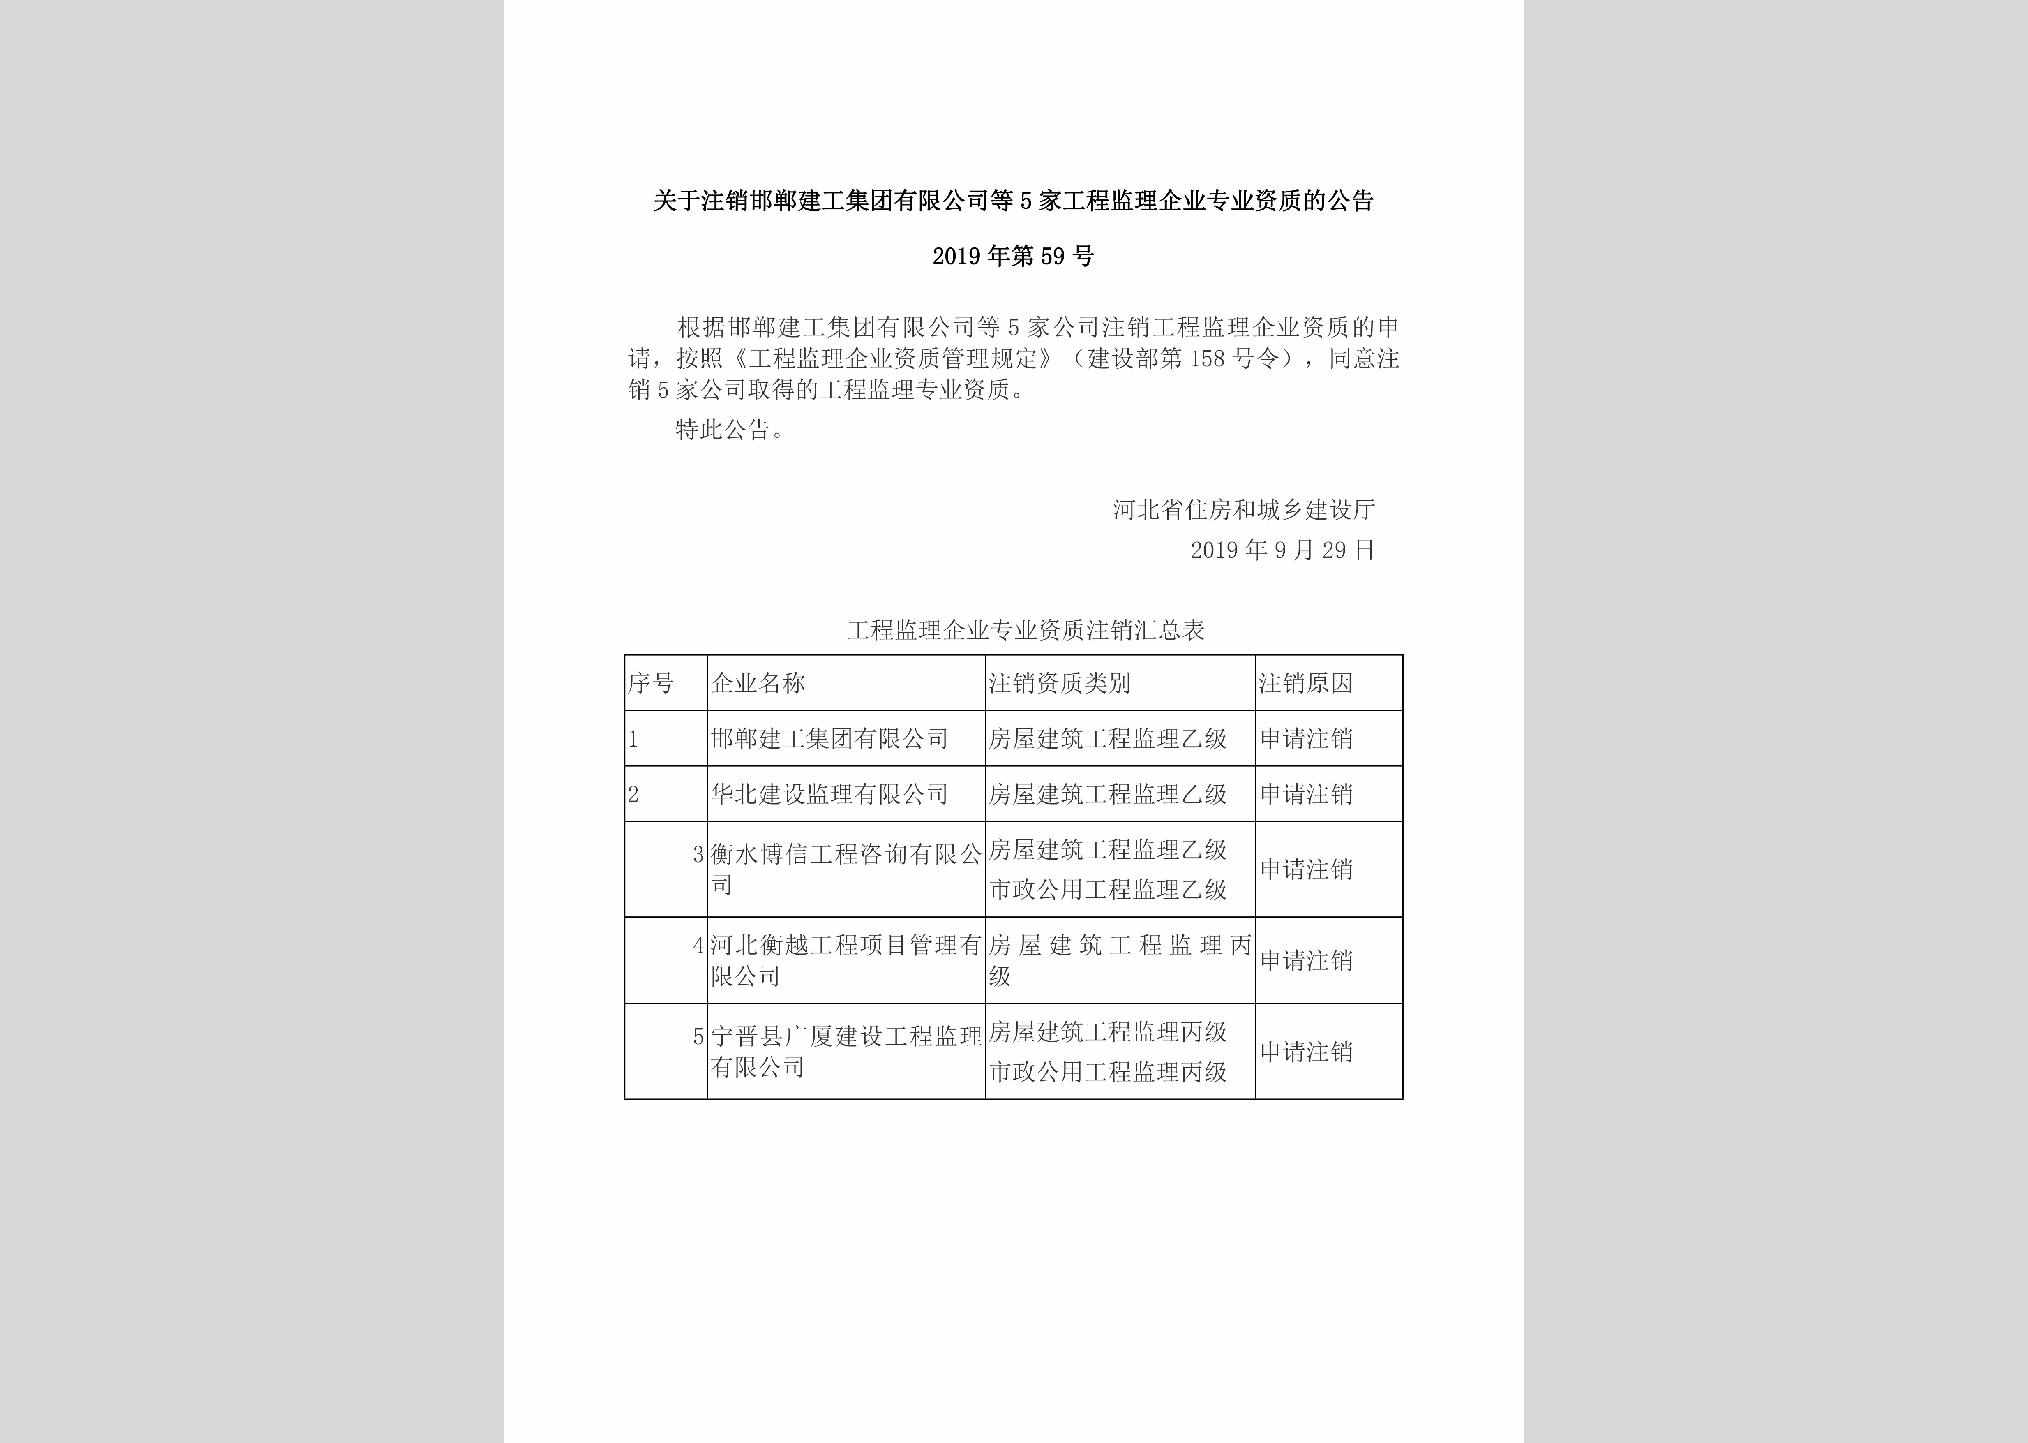 2019年第59号：关于注销邯郸建工集团有限公司等5家工程监理企业专业资质的公告